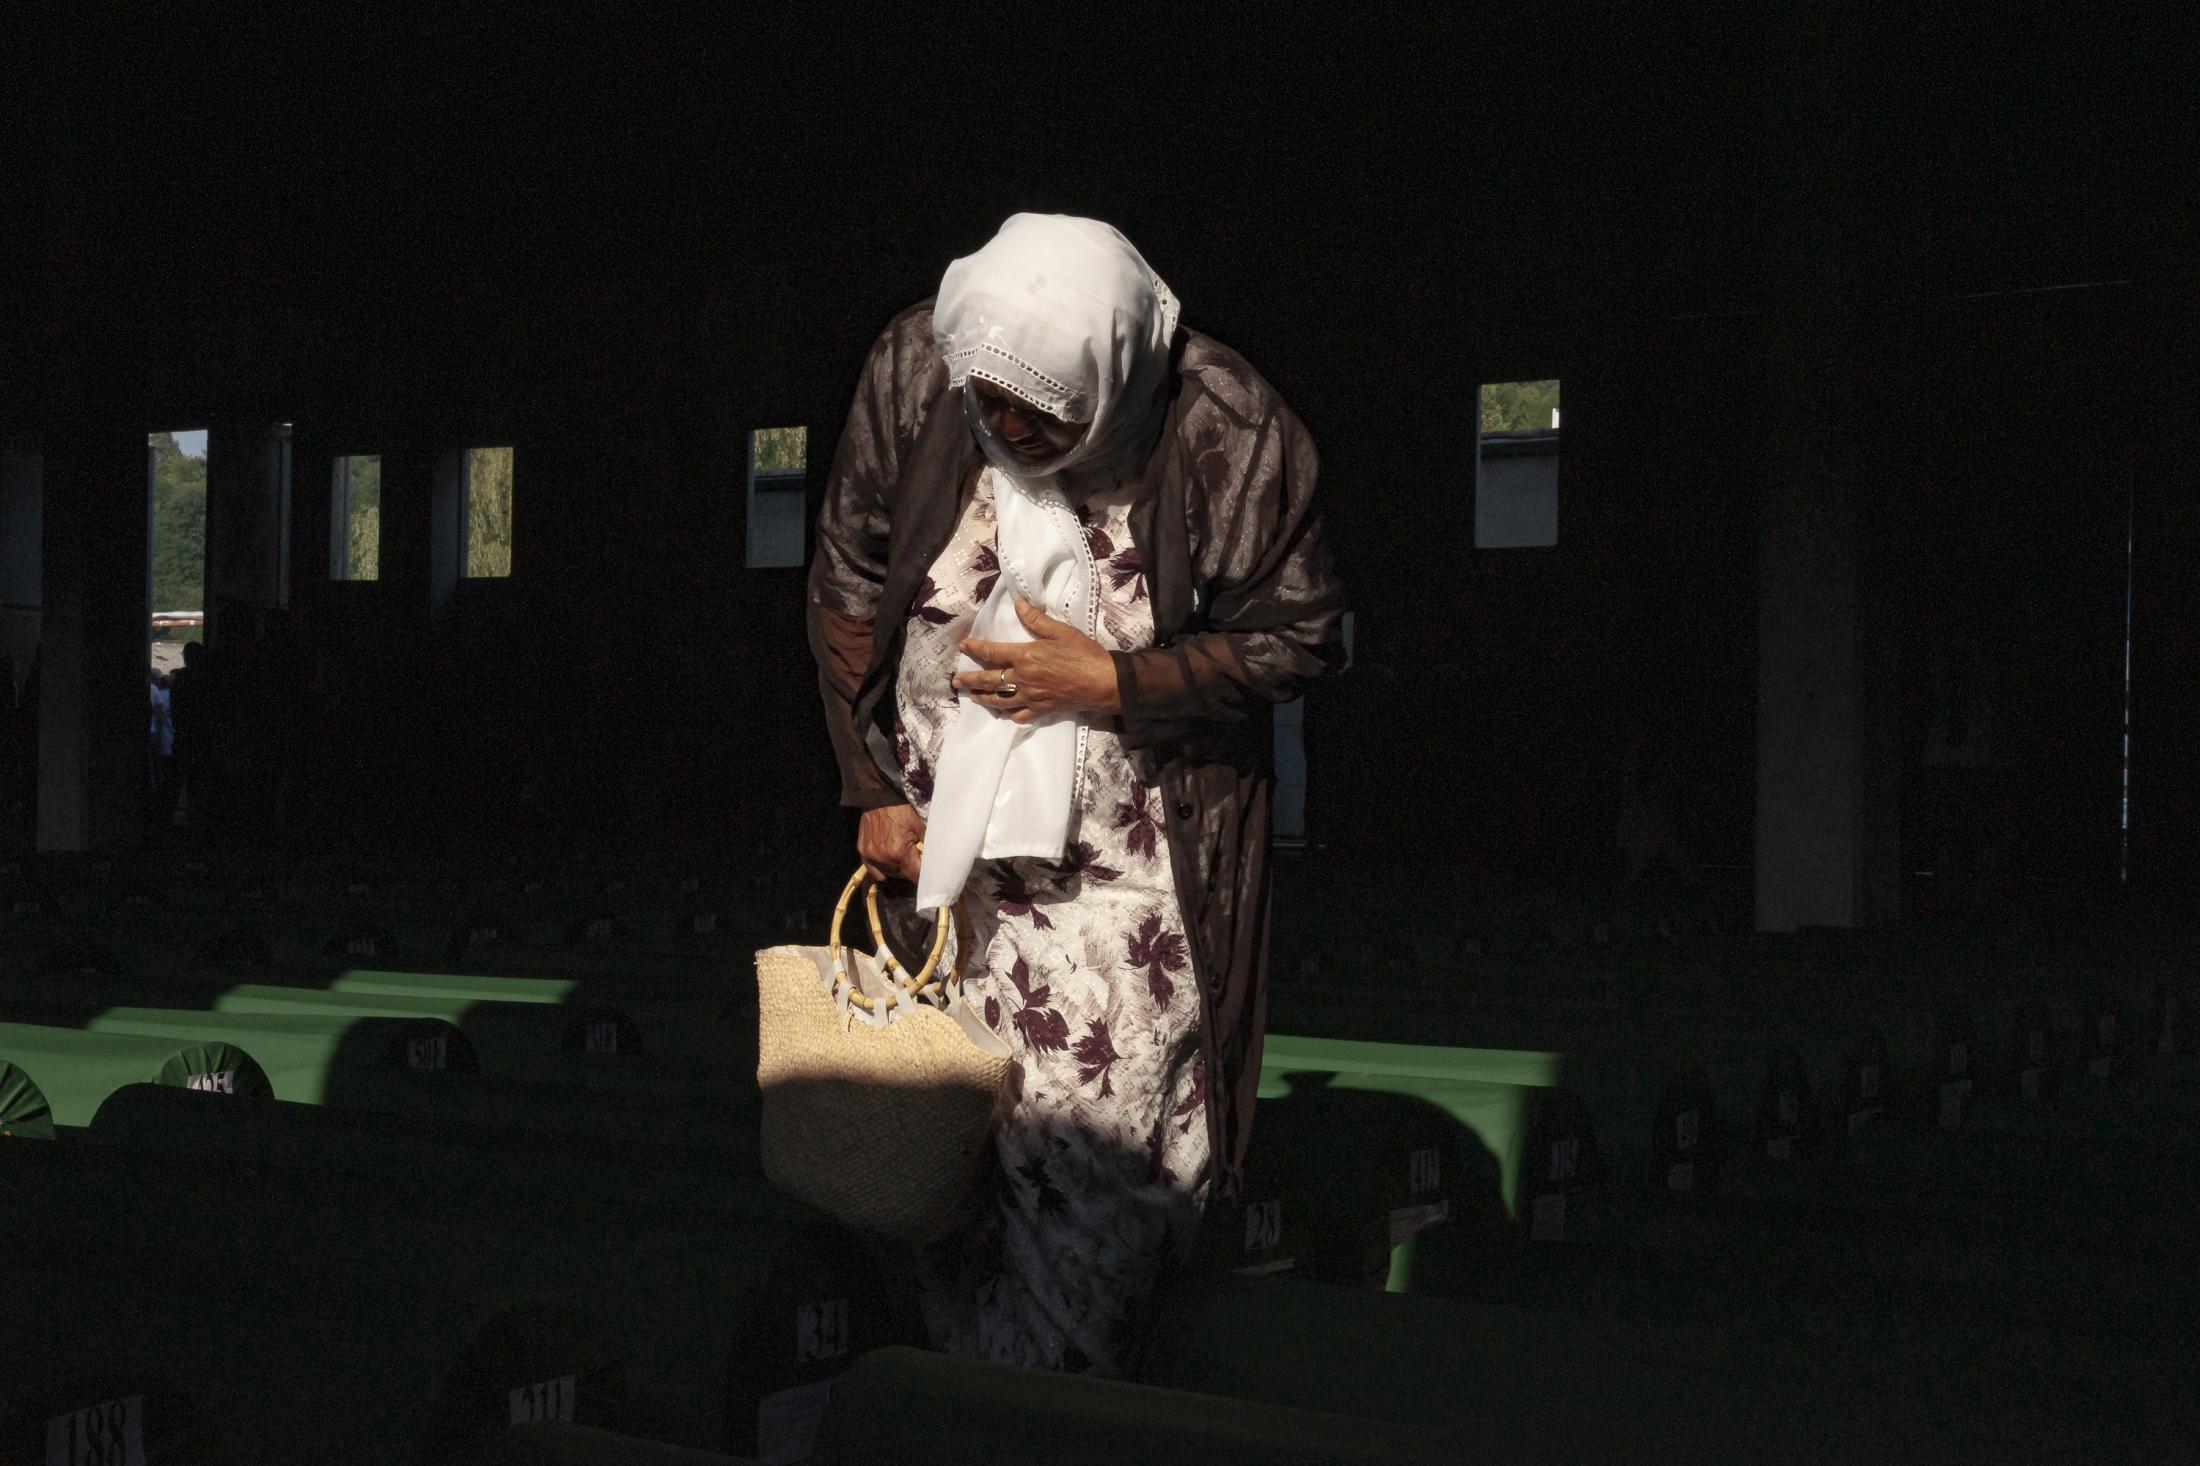 Mourning in Srebrenica